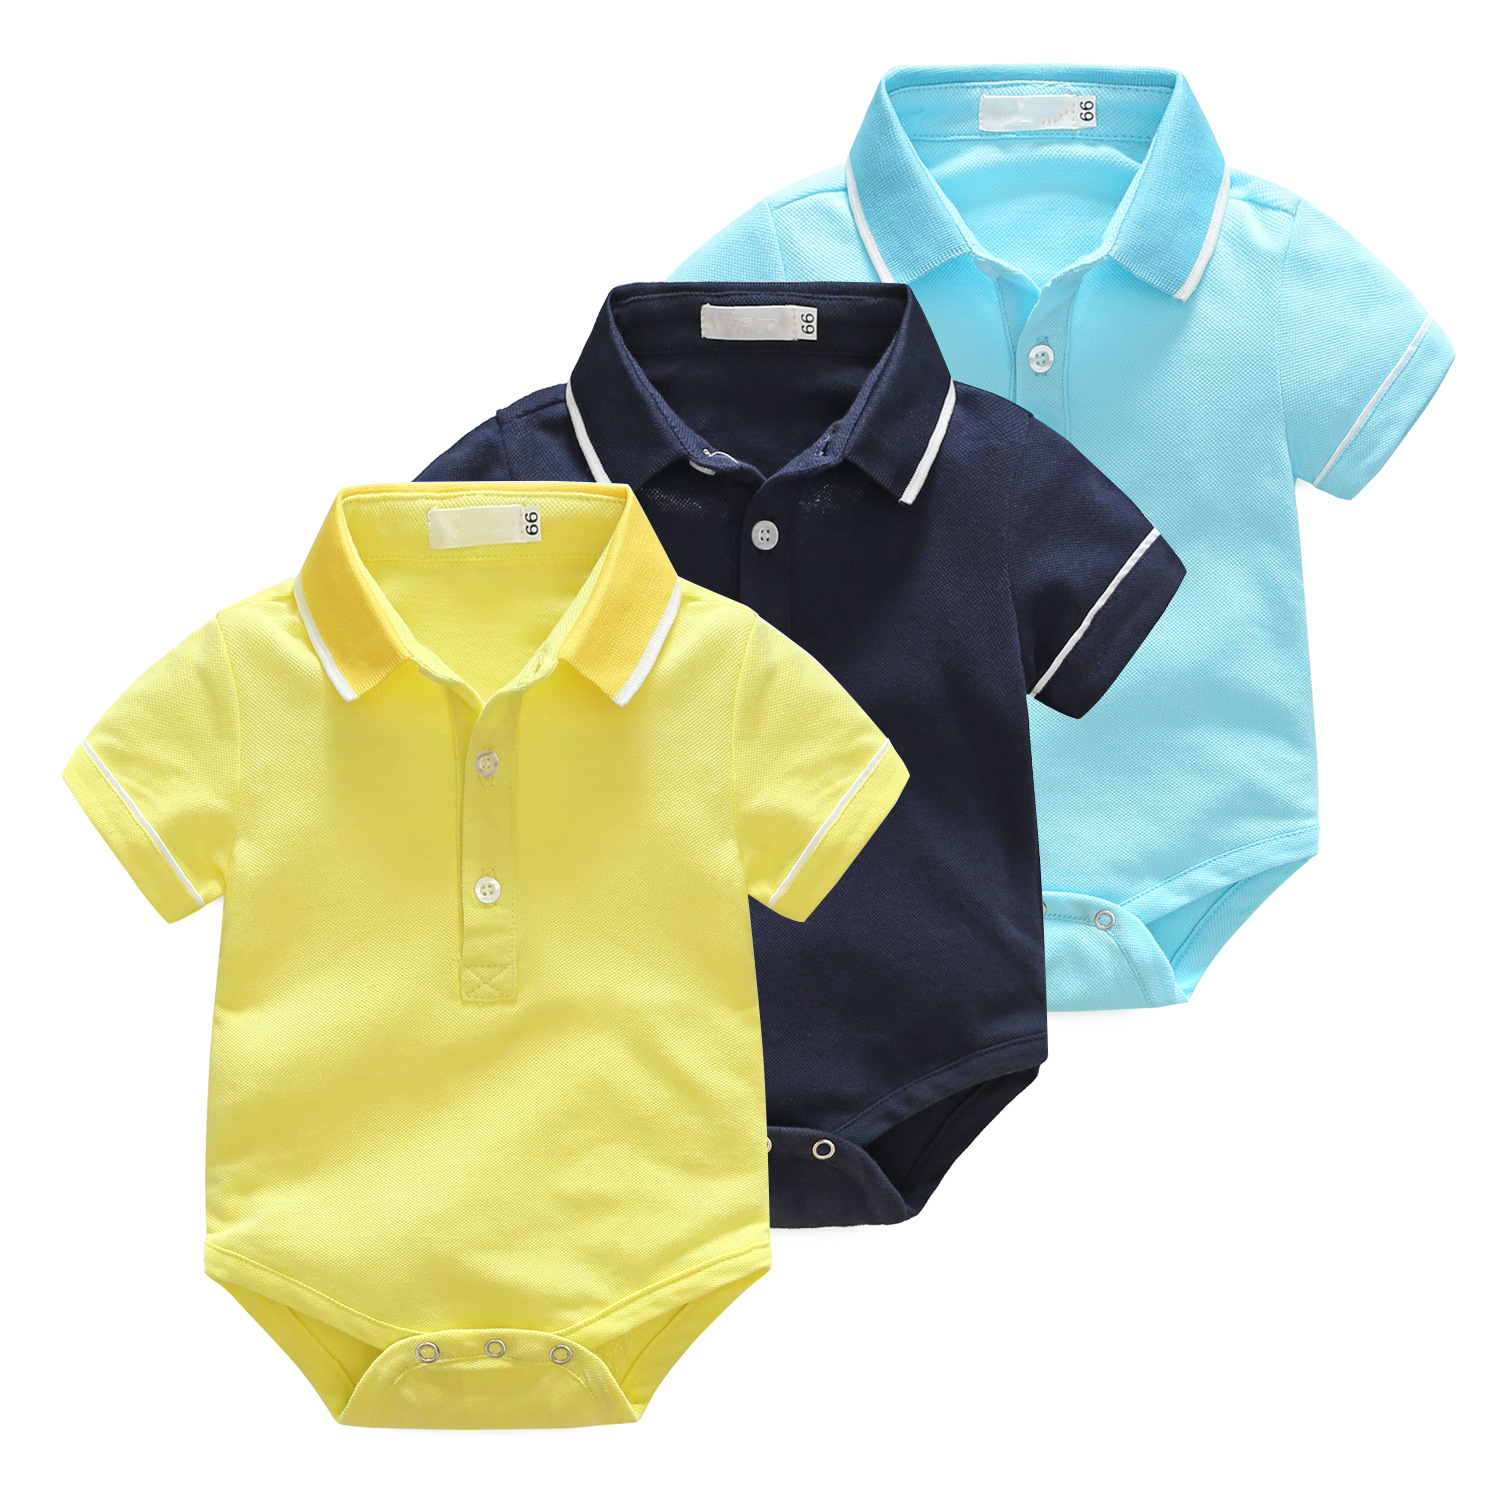 polo baby clothes